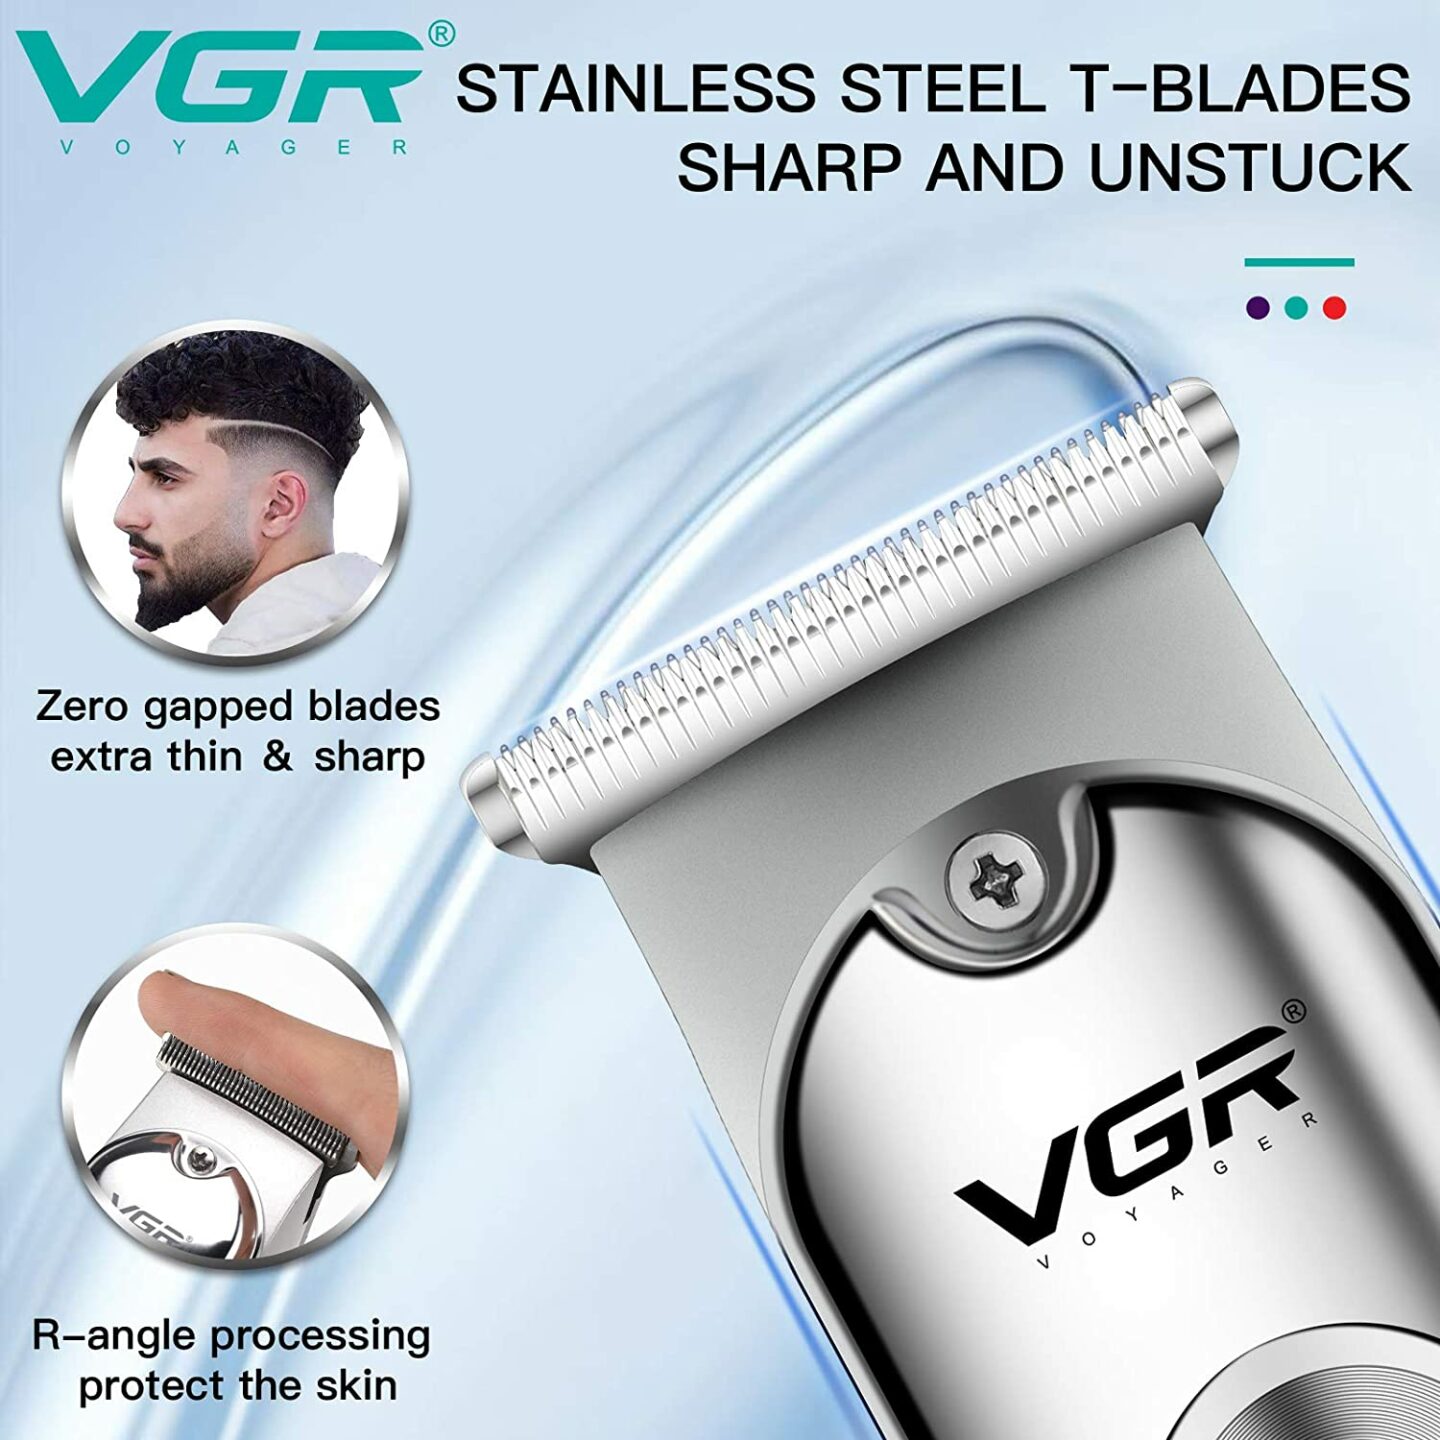 VGR V-071 Cordless Professional Hair Clipper: Buy VGR V-071 Cordless Professional Hair Clipper Best Price in Sri Lanka | ido.lk